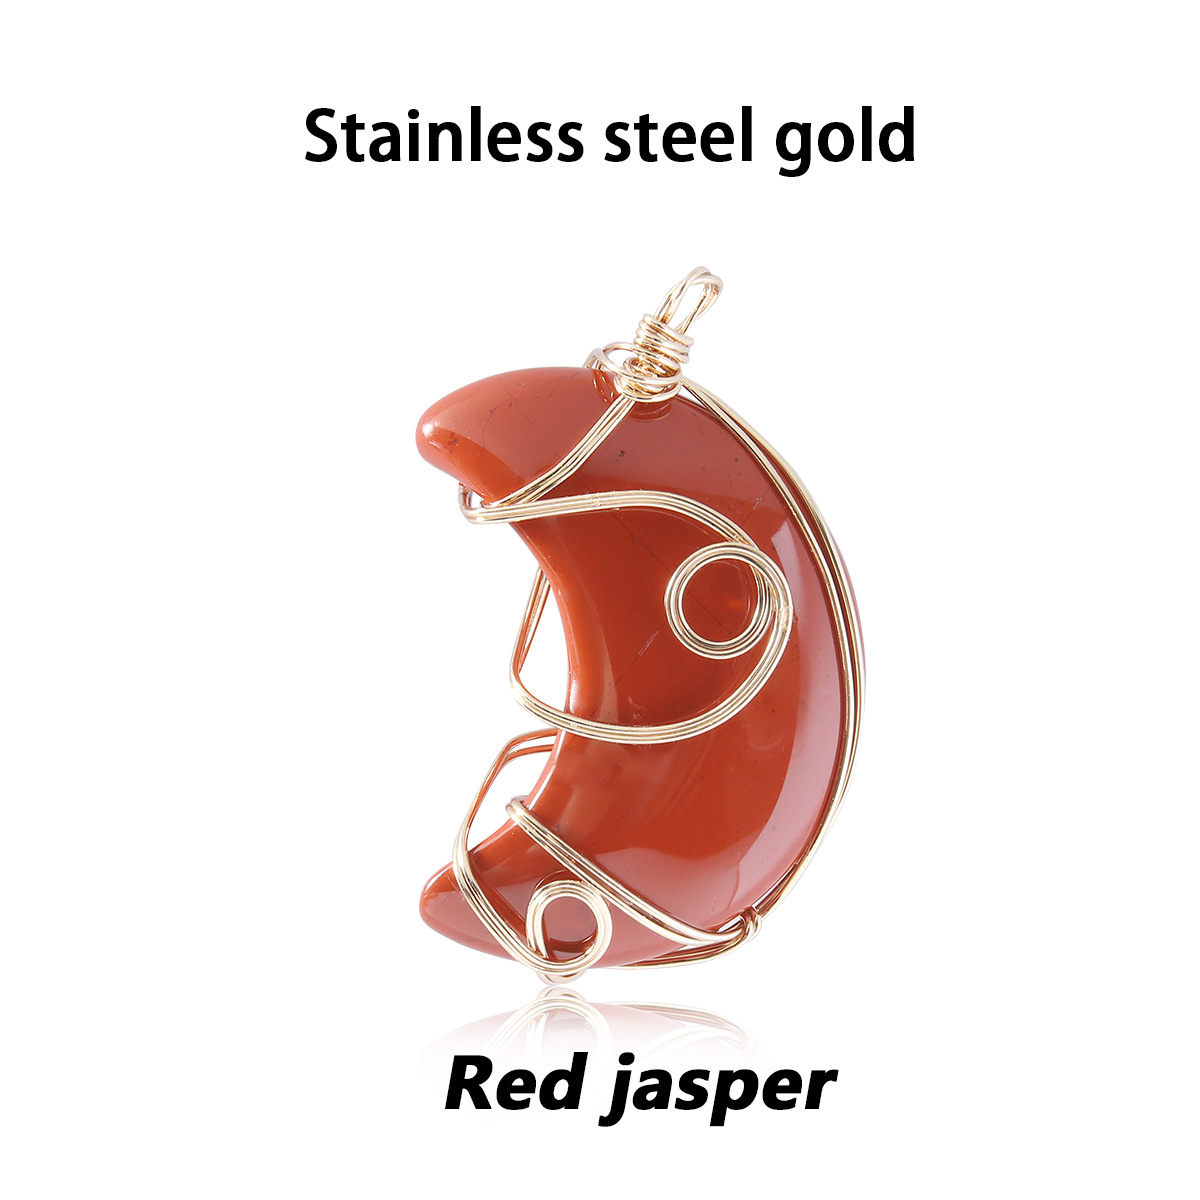 11 red jasper gold